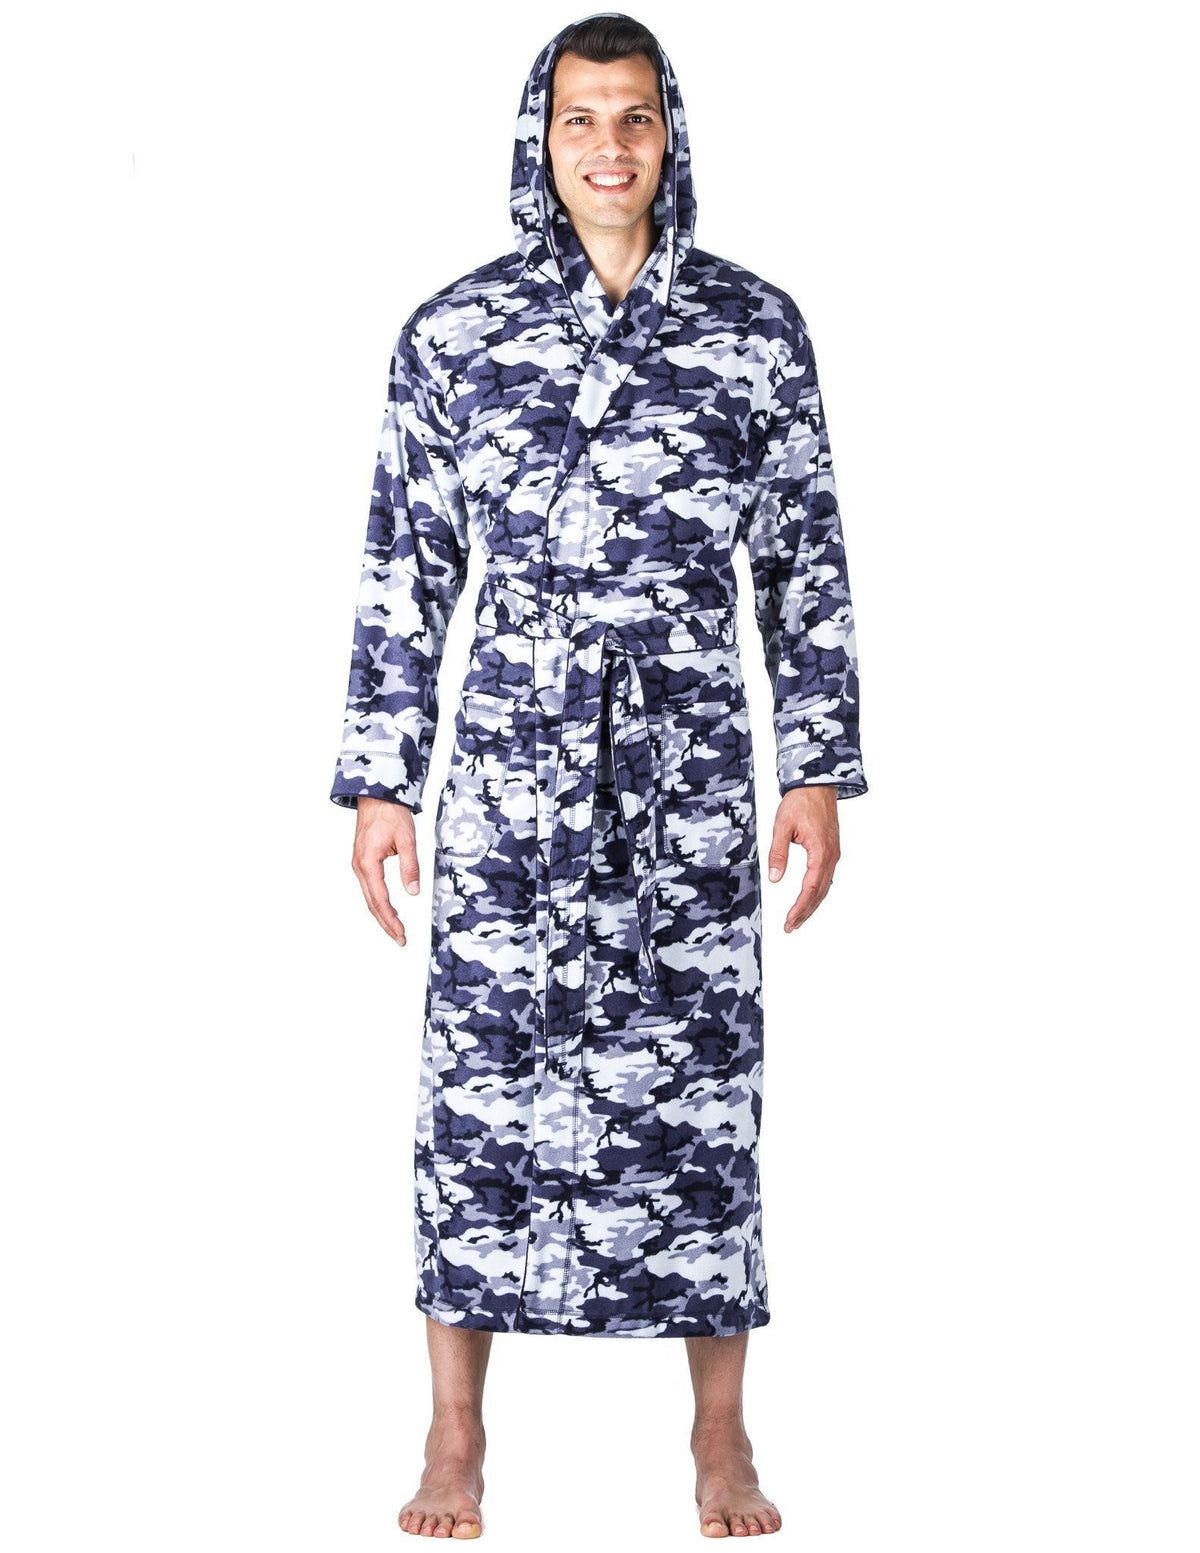 Men's Microfleece Hooded Robe - Camo